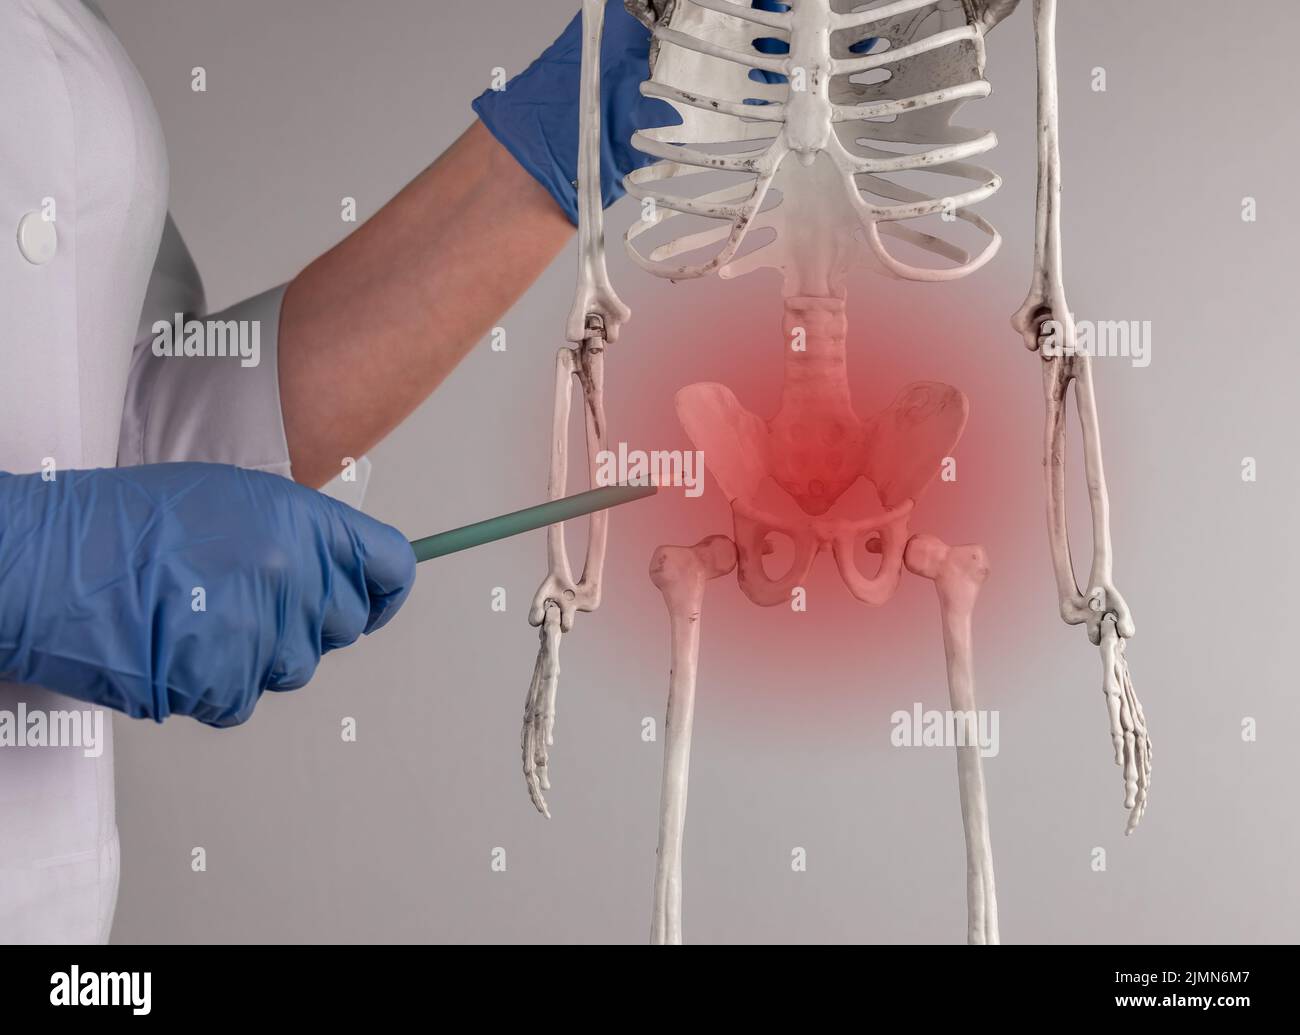 Ärztliche Hand, die auf das Skelettbecken mit rotem Fleck zeigt. Anatomie des Skelettsystems, Körperstruktur, medizinisches Bildungskonzept. Fortpflanzungs-, Urin- oder Verdauungssystem. Hochwertige Fotos Stockfoto